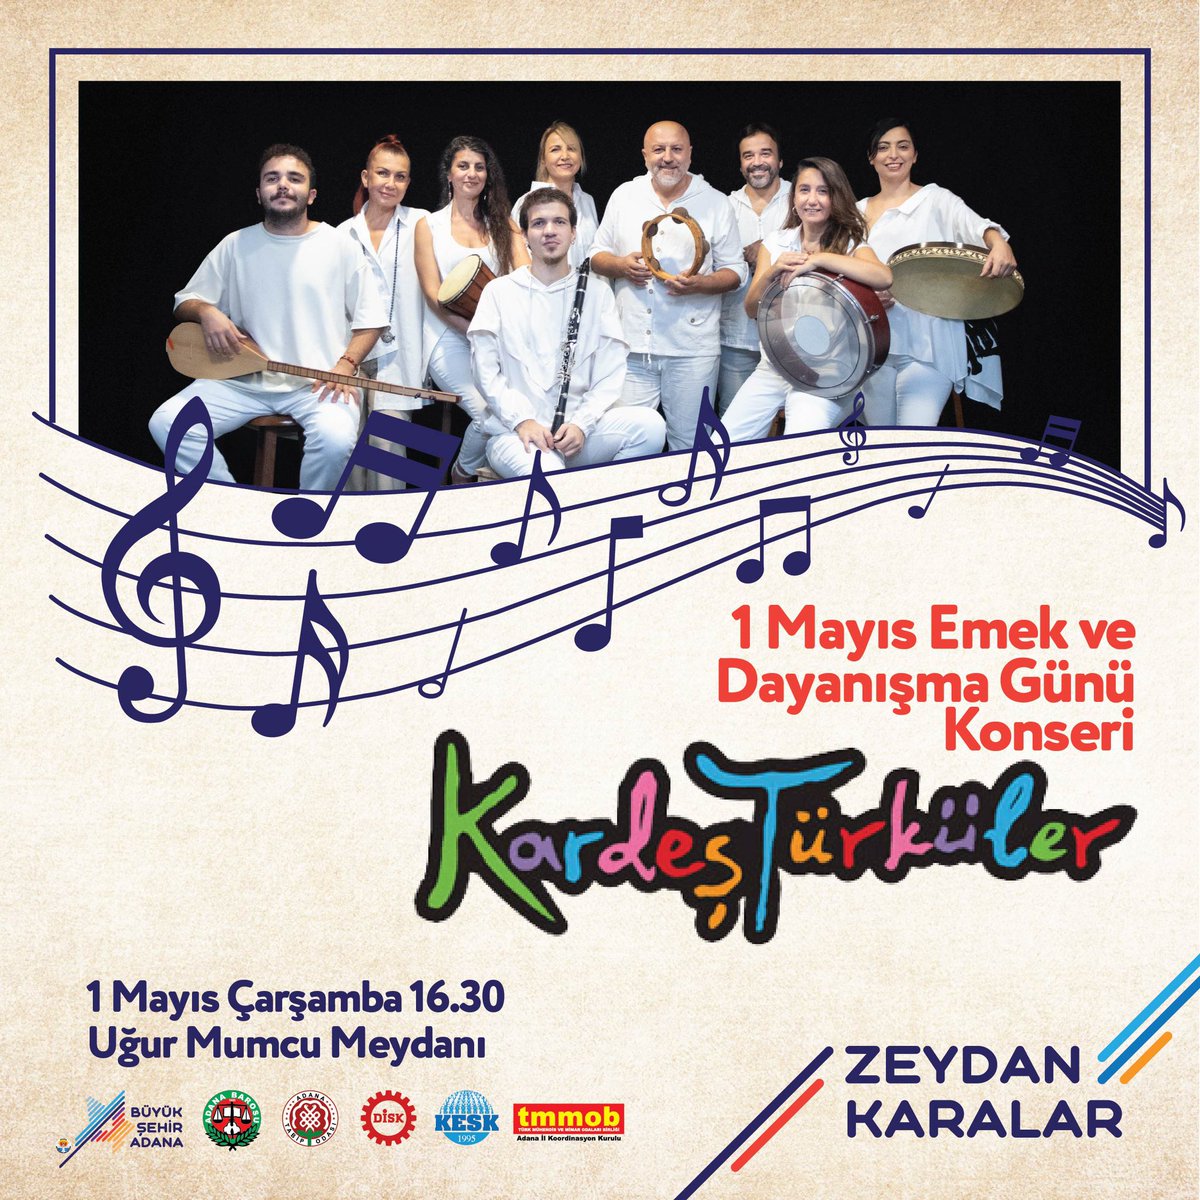 1 Mayıs Emek ve Dayanışma Günü’nde düzenleyeceğimiz Kardeş Türküler konserine tüm halkımız davetlidir. 📅 1 Mayıs Çarşamba 🕖 16.30 📍 Uğur Mumcu Meydanı